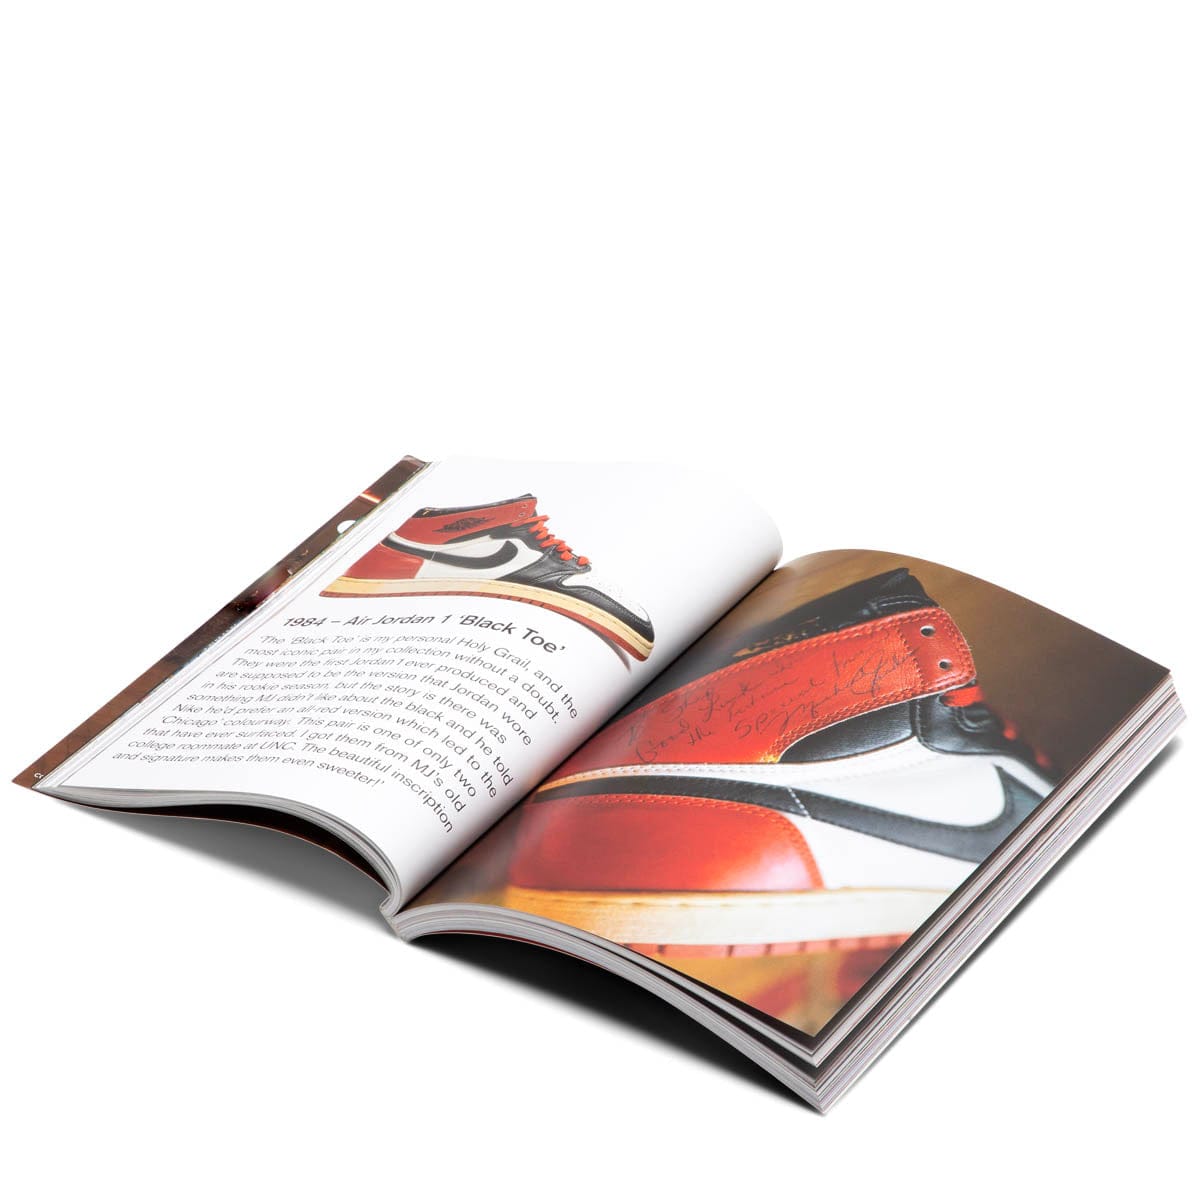 Sneaker Freaker Books RARE AIR / O/S SNEAKER FREAKER #48 RARE AIR